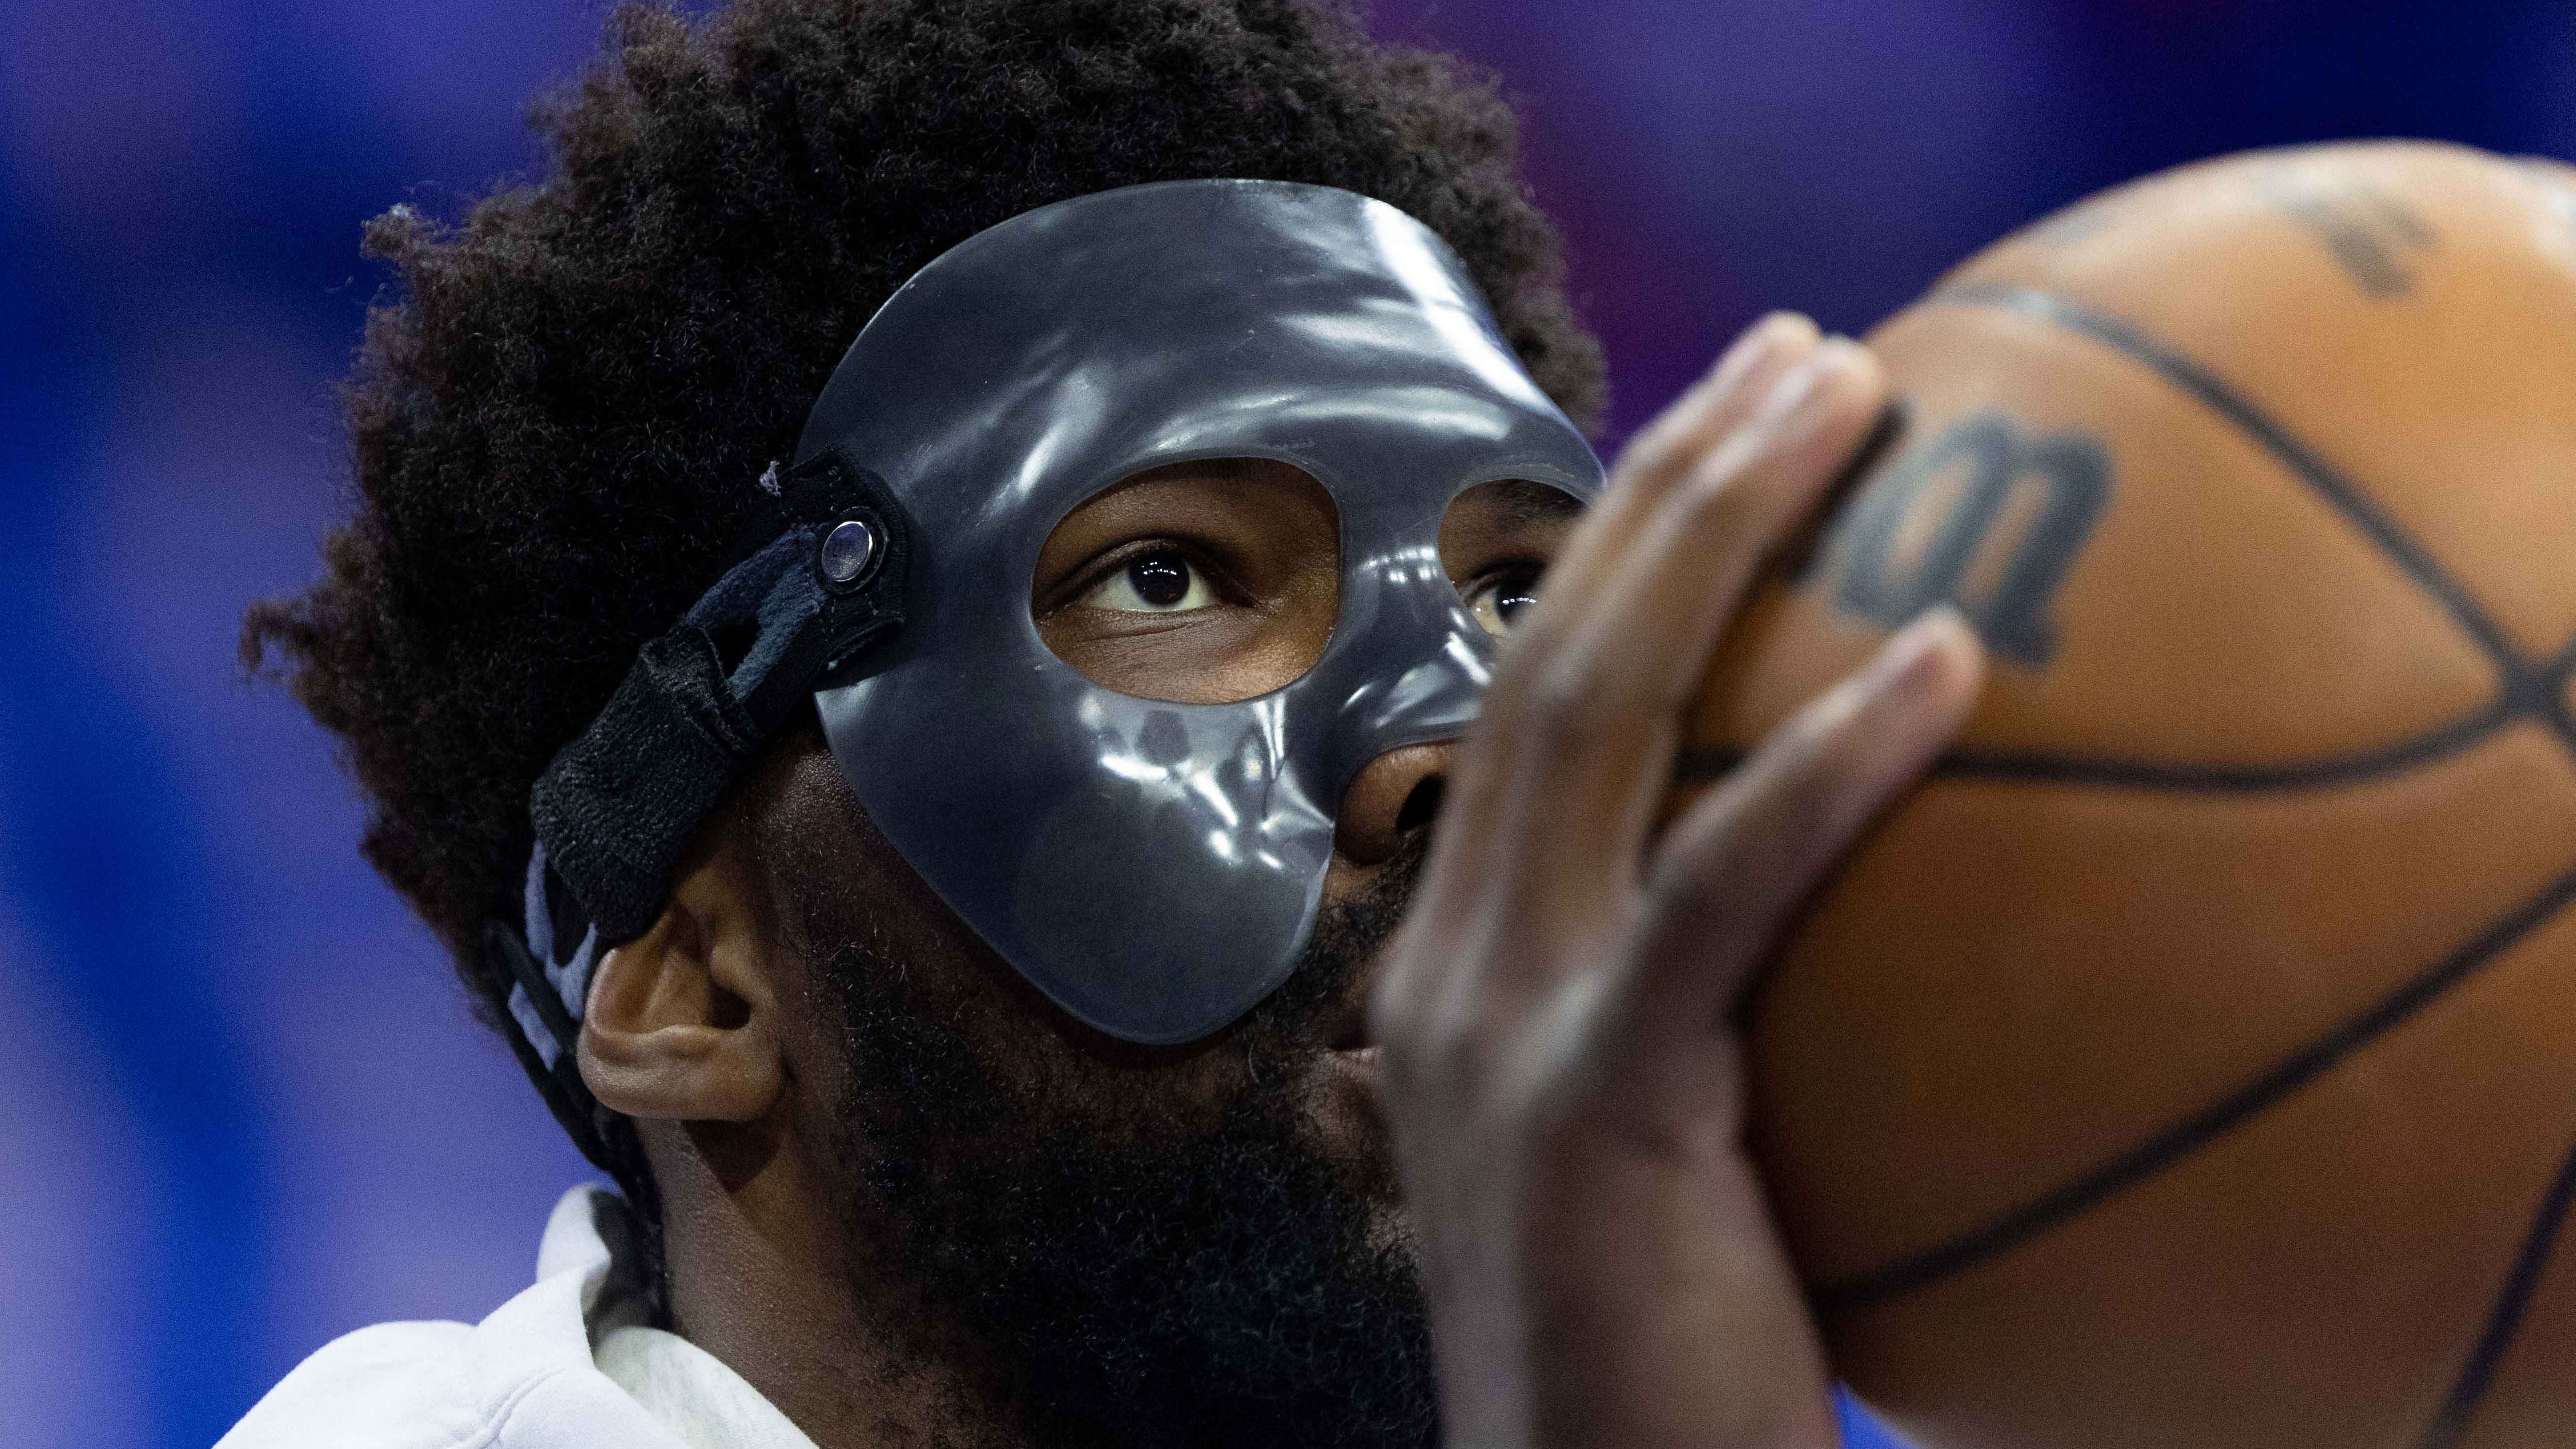 Basketball Face Guard for Broken Nose, Protective Facial Cover